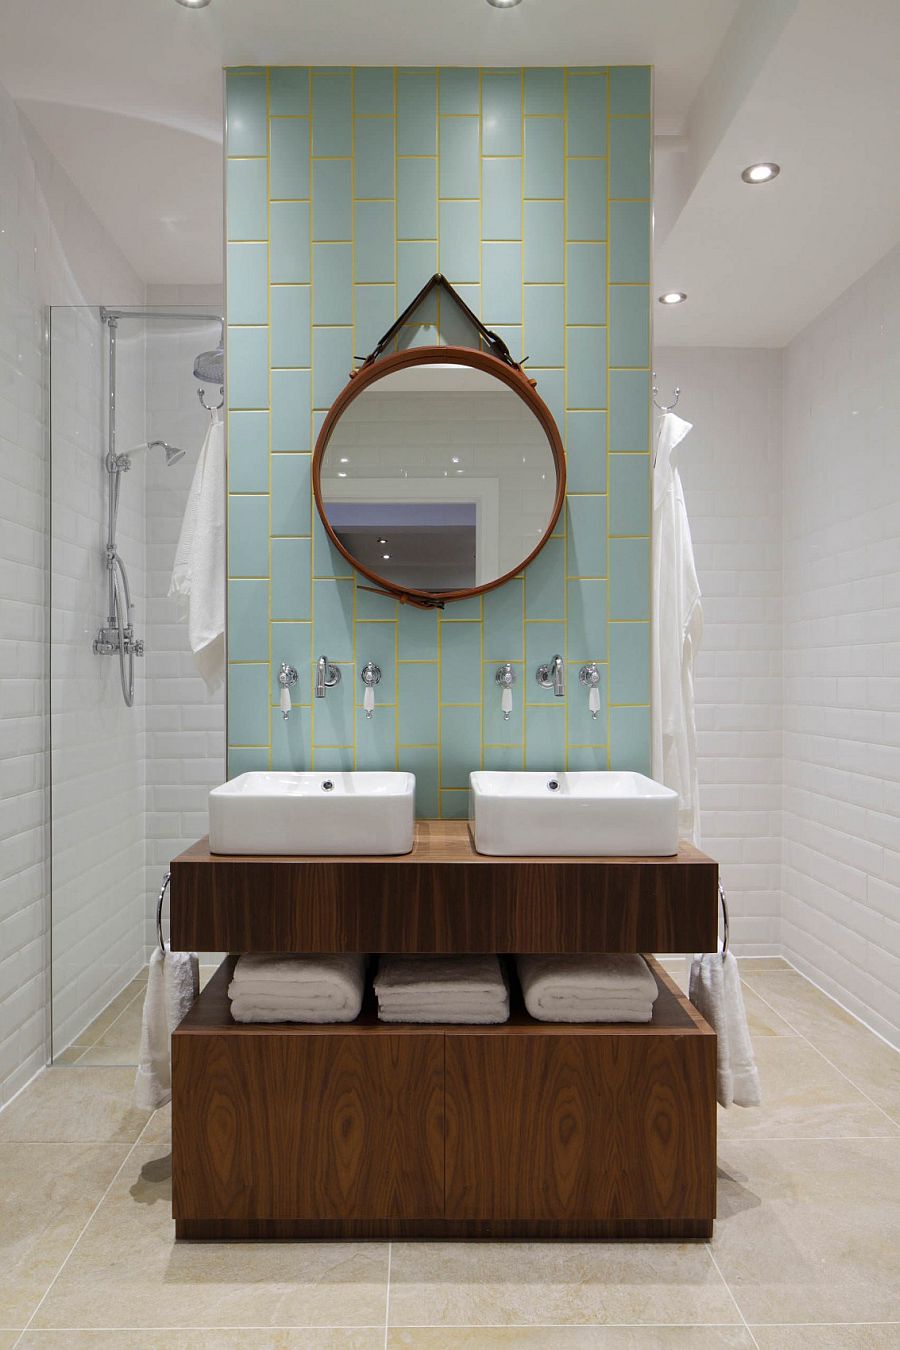 Bathroom vanity and mirror idea